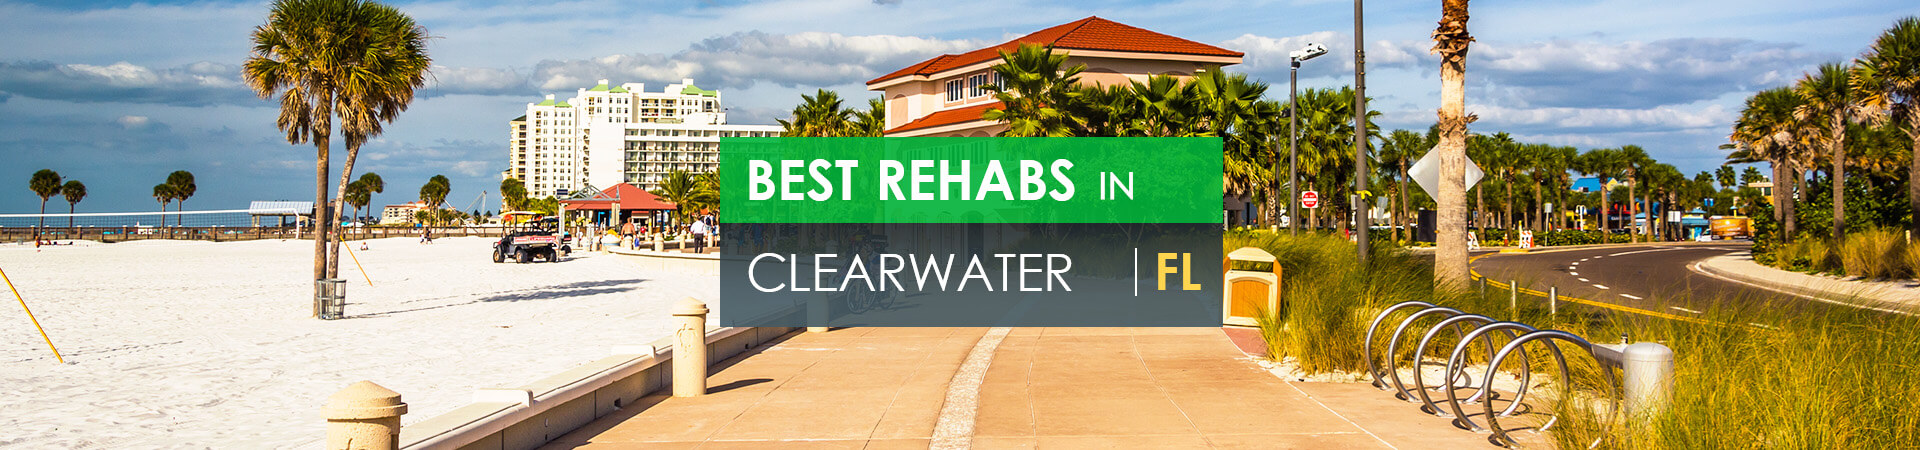 Best rehabs in Clearwater, FL